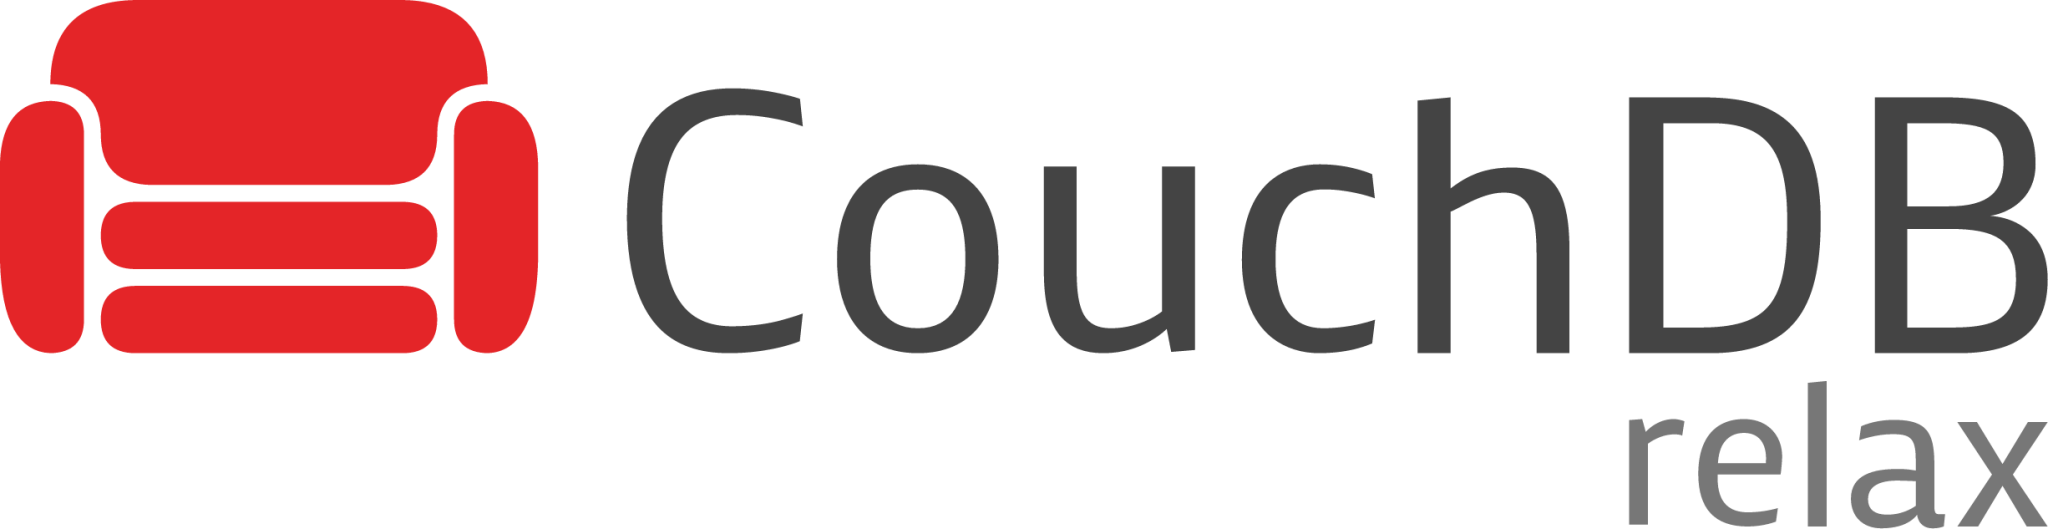 couchdb icon